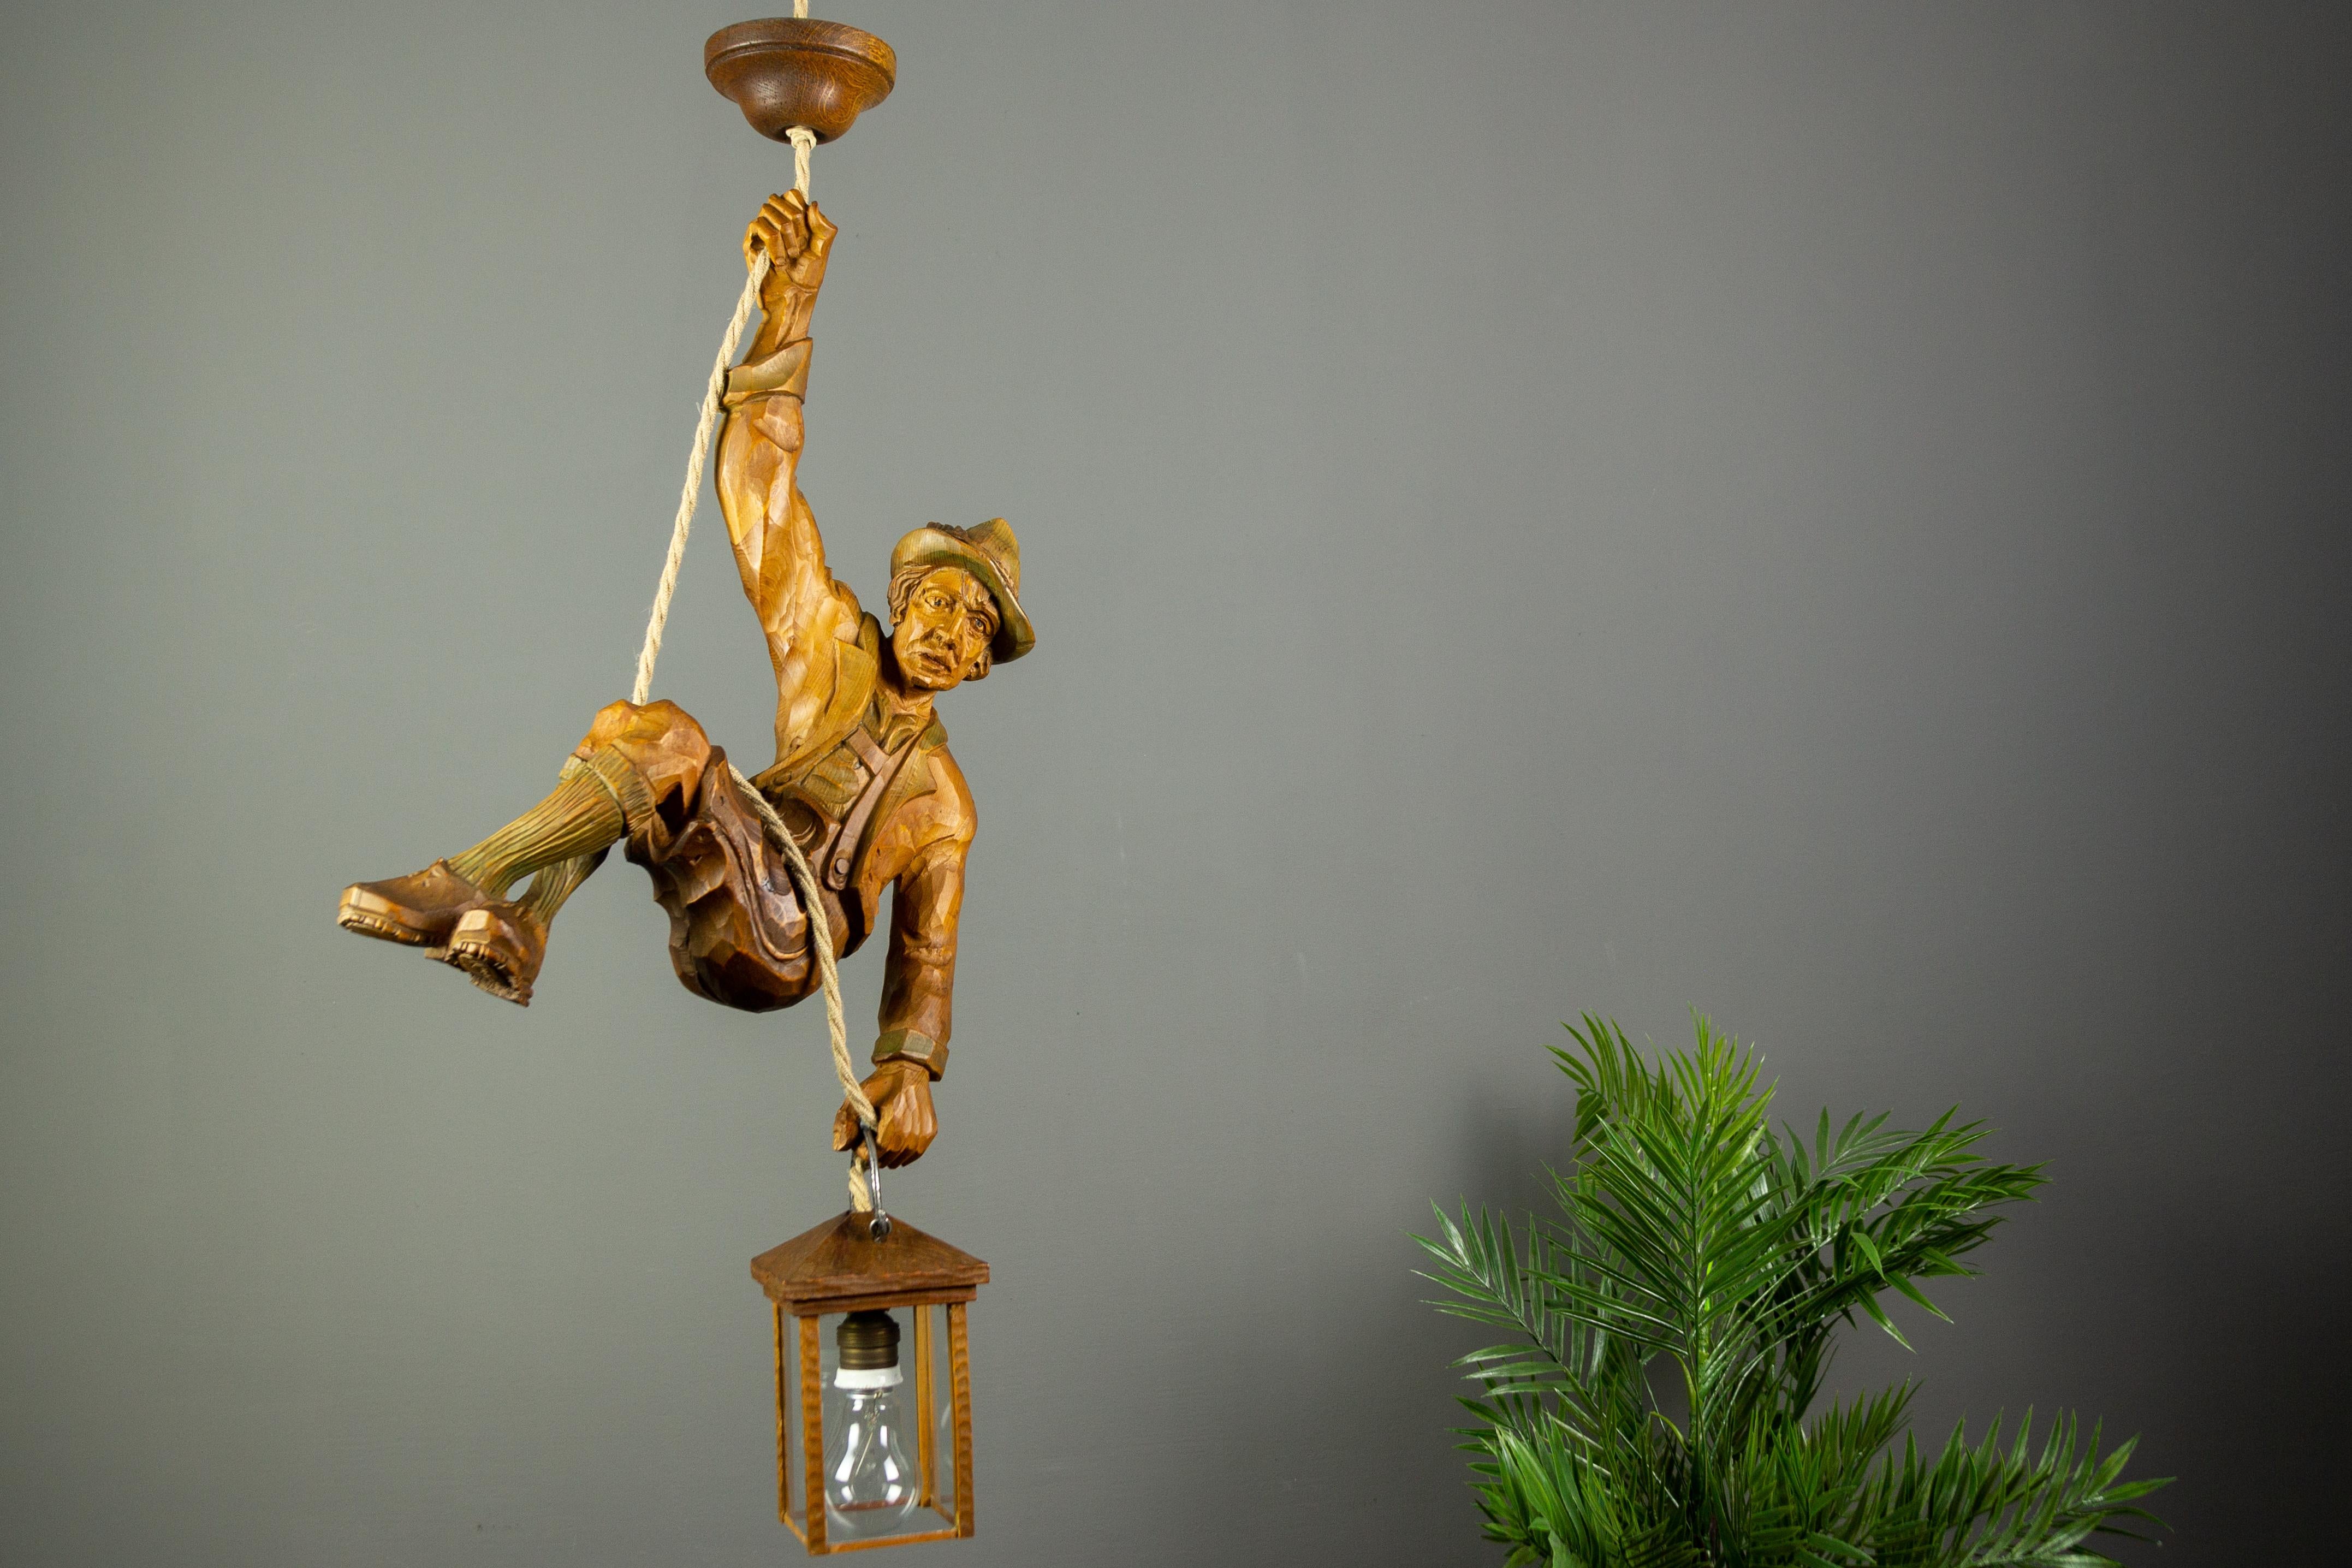 Merveilleuse lampe suspendue figurative allemande présentant une grande figure d'alpiniste sculptée à la main. L'alpiniste en bois sculpté se tient à une corde et tient une lanterne en bois dans une main. La figure est légèrement teintée de couleurs